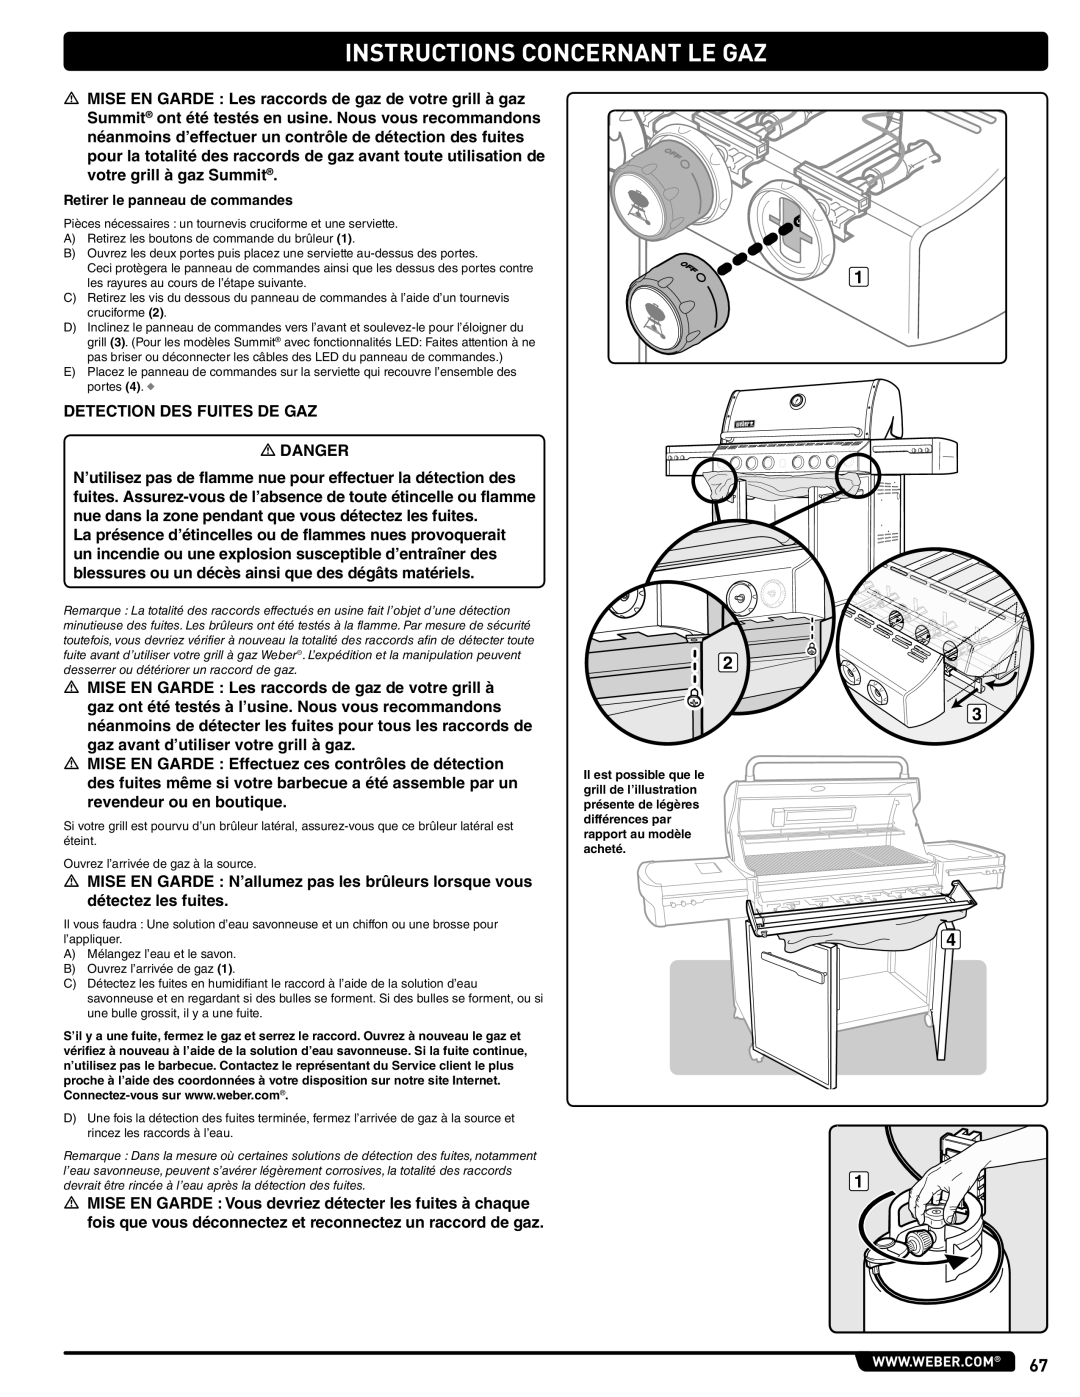 Summit 56214 manual Instructions Concernant Le Gaz, DETECTION DES FUITES DE GAZ m DANGER 